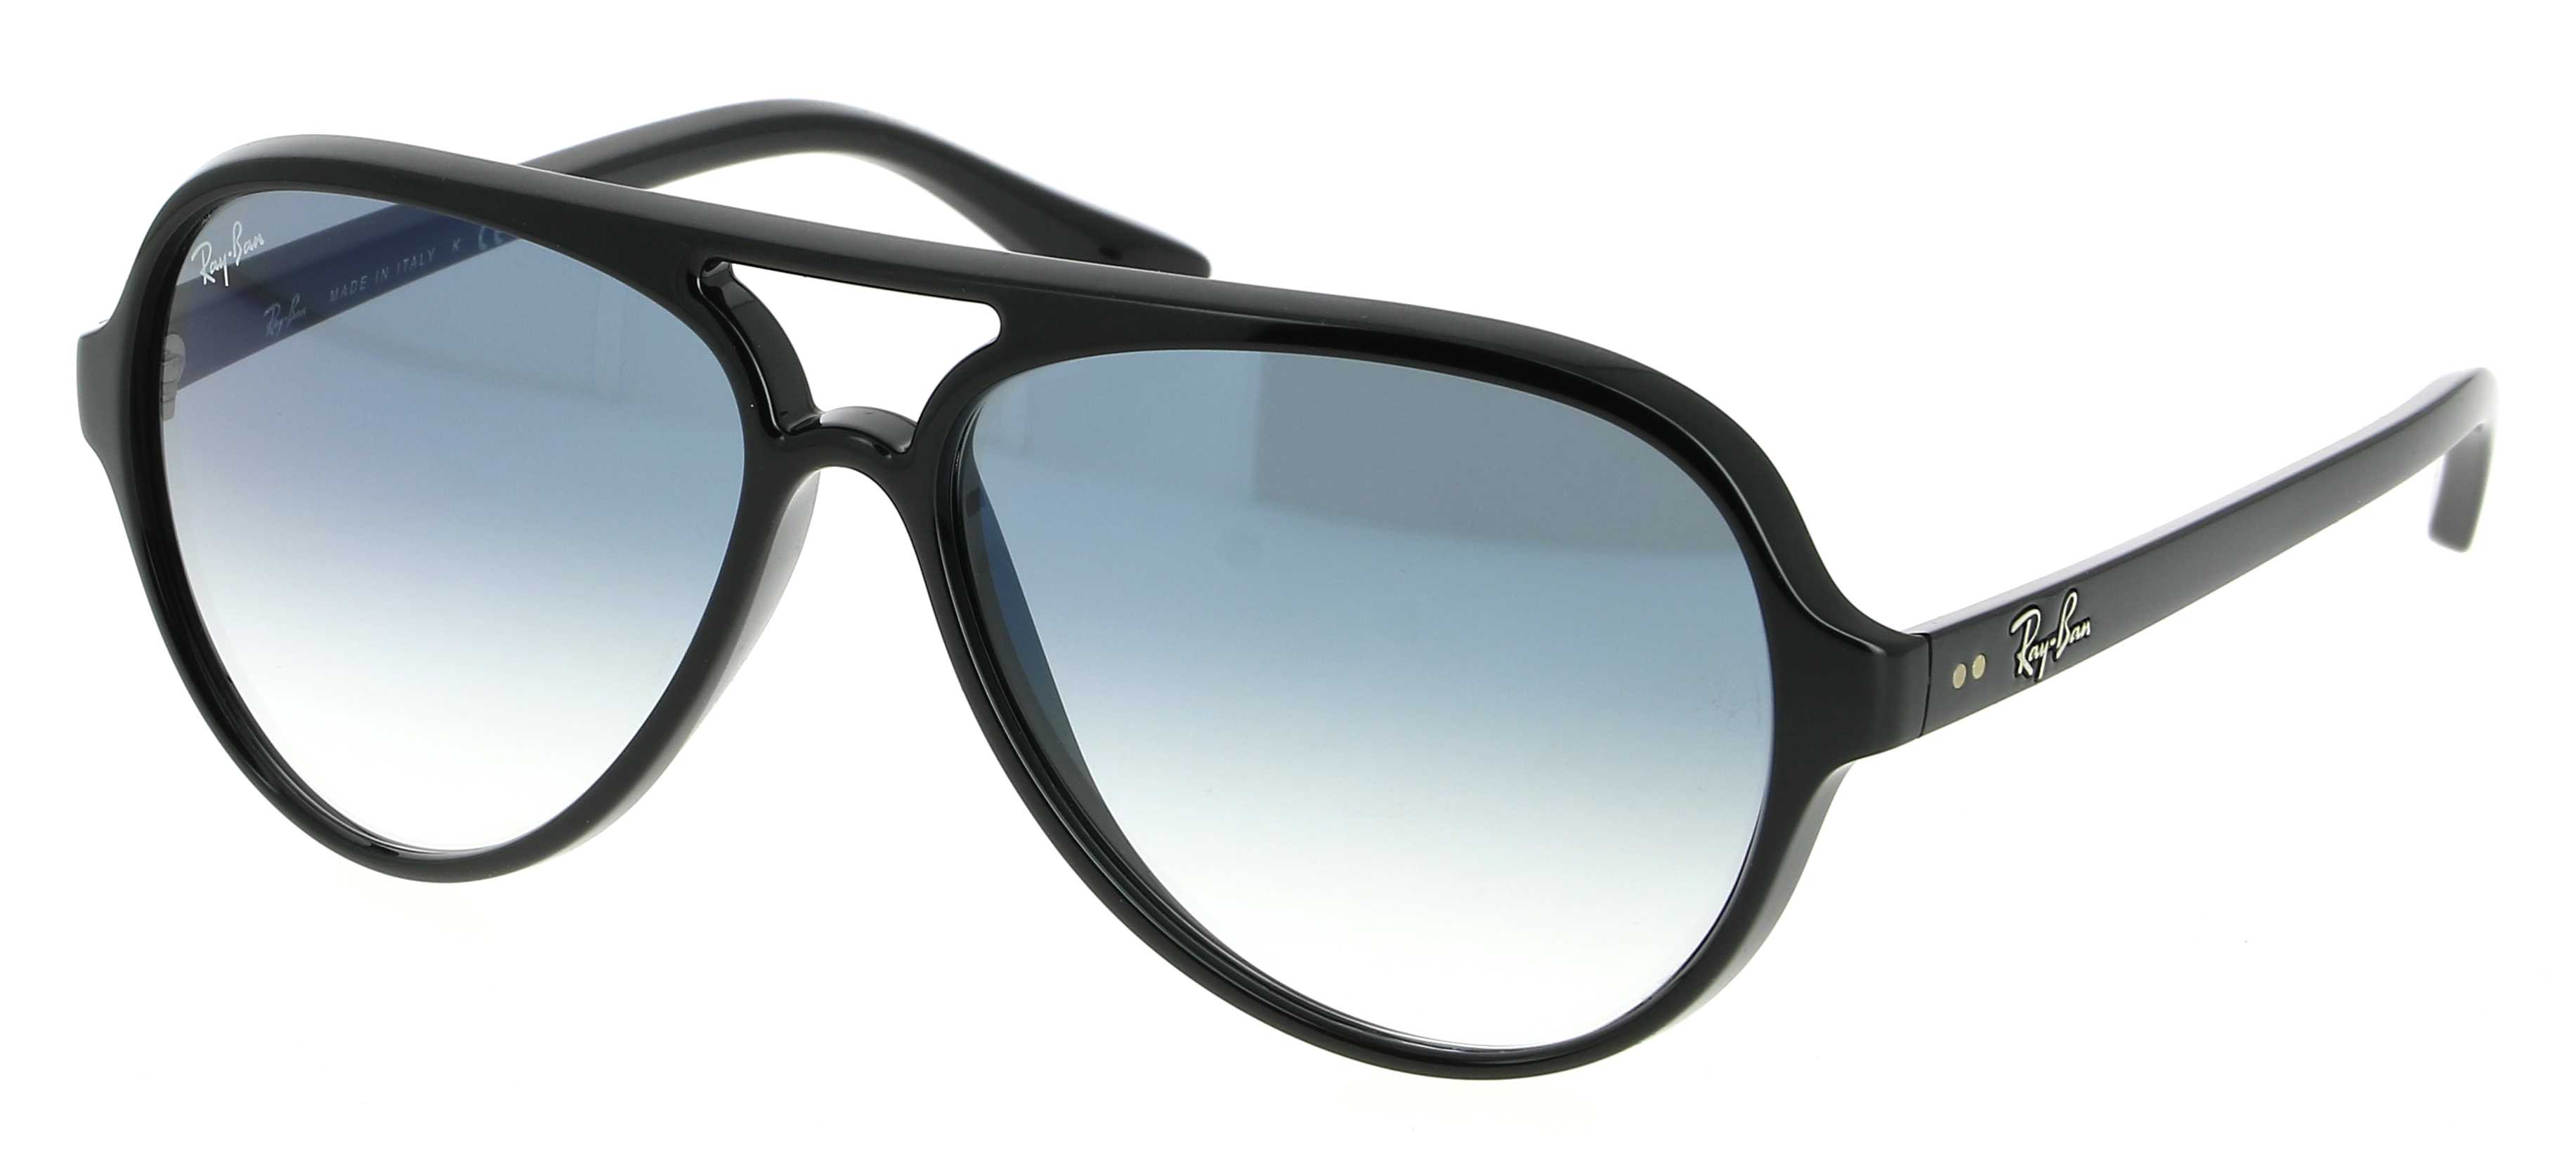 Sunglasses RAY-BAN RB 4125 601/3F Cats 5000 59/13 Unisex noir Aviator  frames Full Frame Glasses trendy 59mmx13mm 133$CA